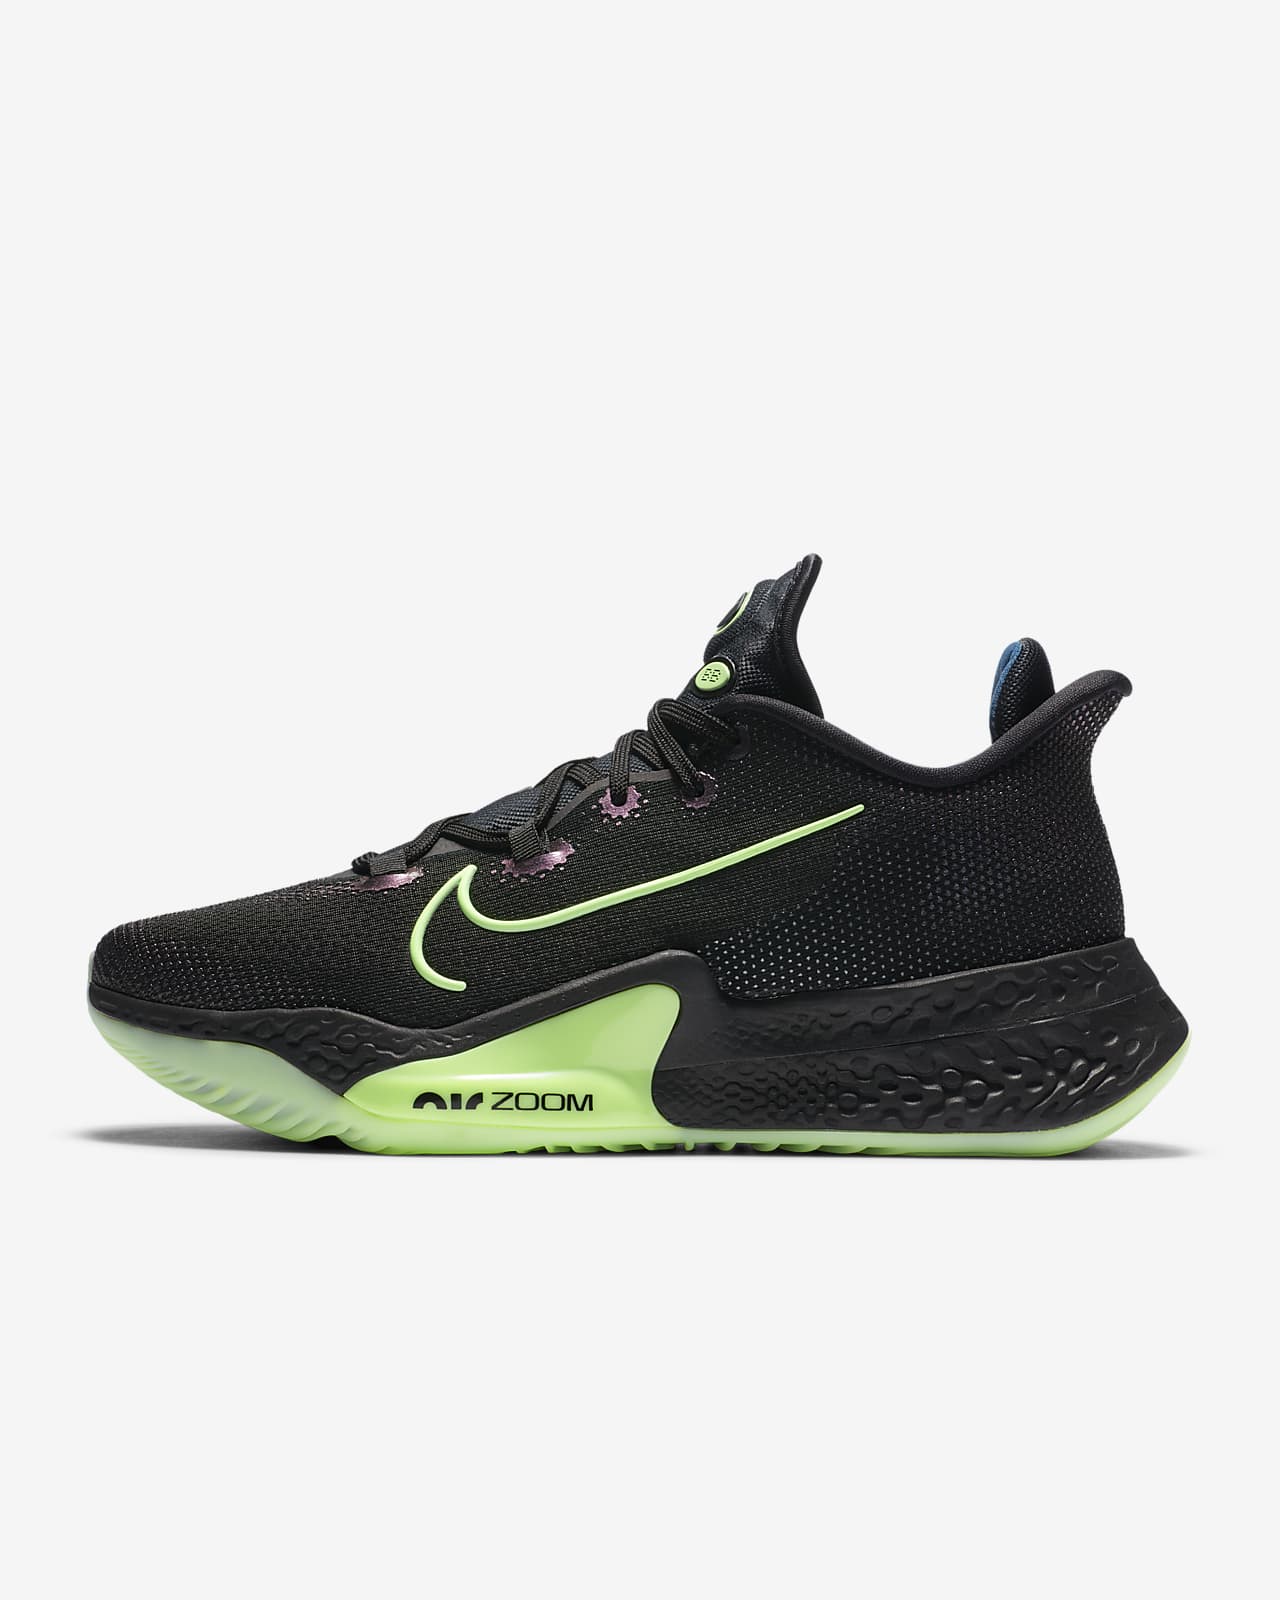 Nike Air Zoom BB NXT Basketball Shoe. Nike MA